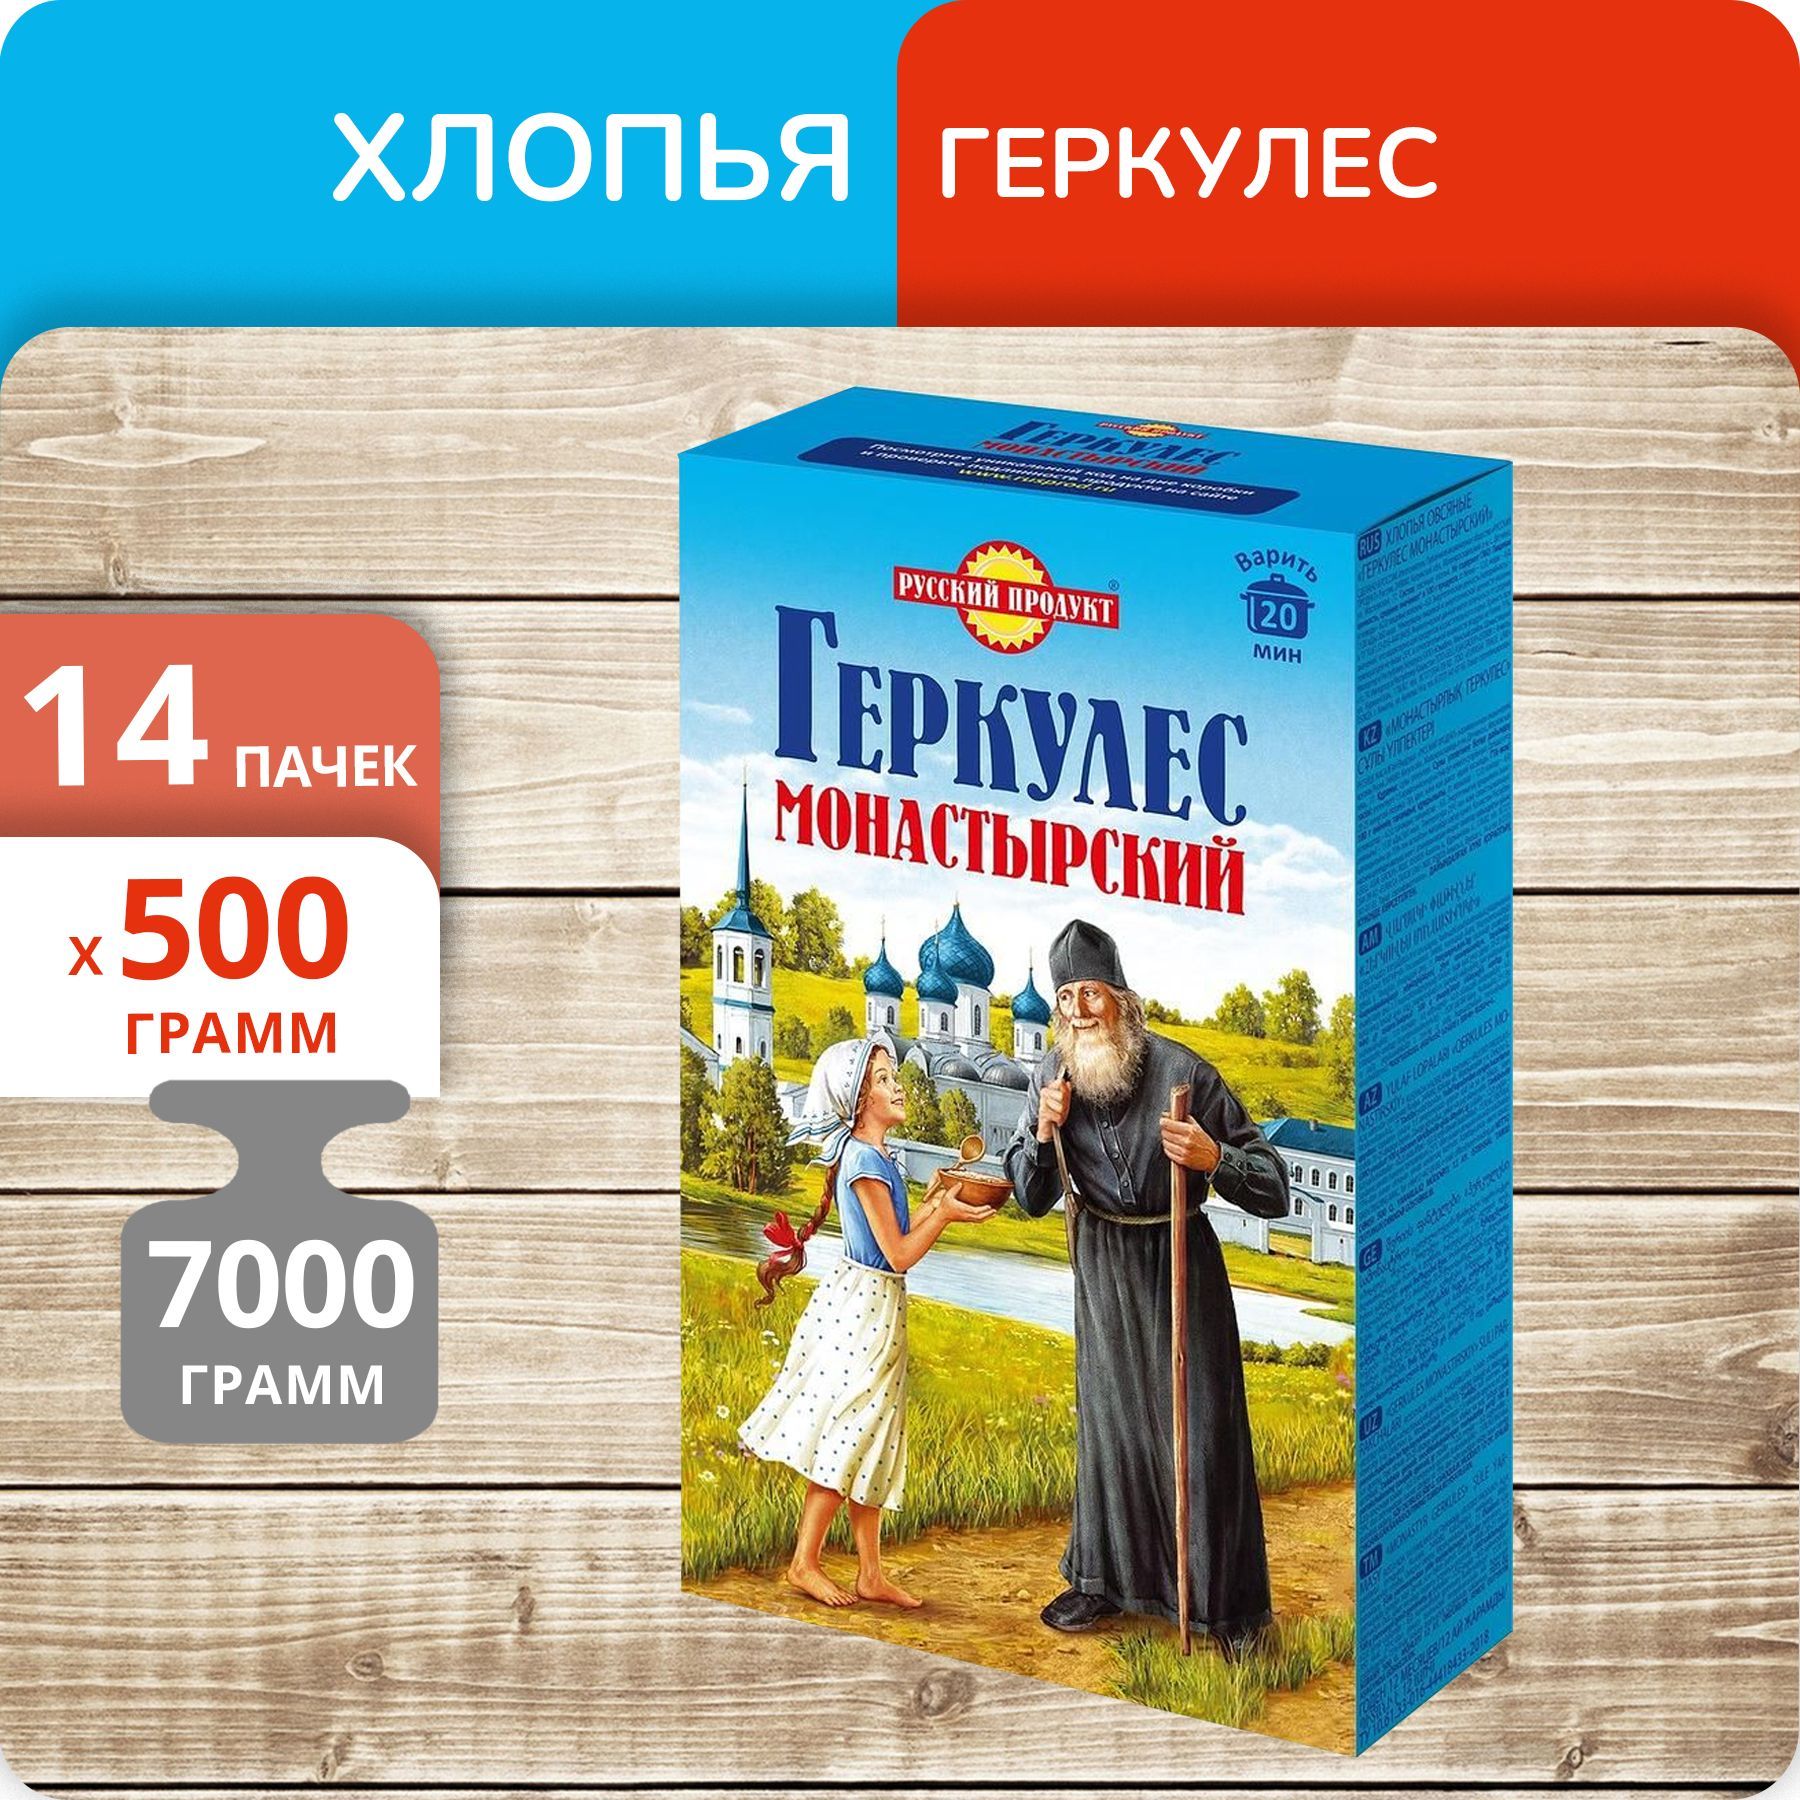 Геркулес Русский продукт Монастырский овсяные хлопья 500г, 14 пачек